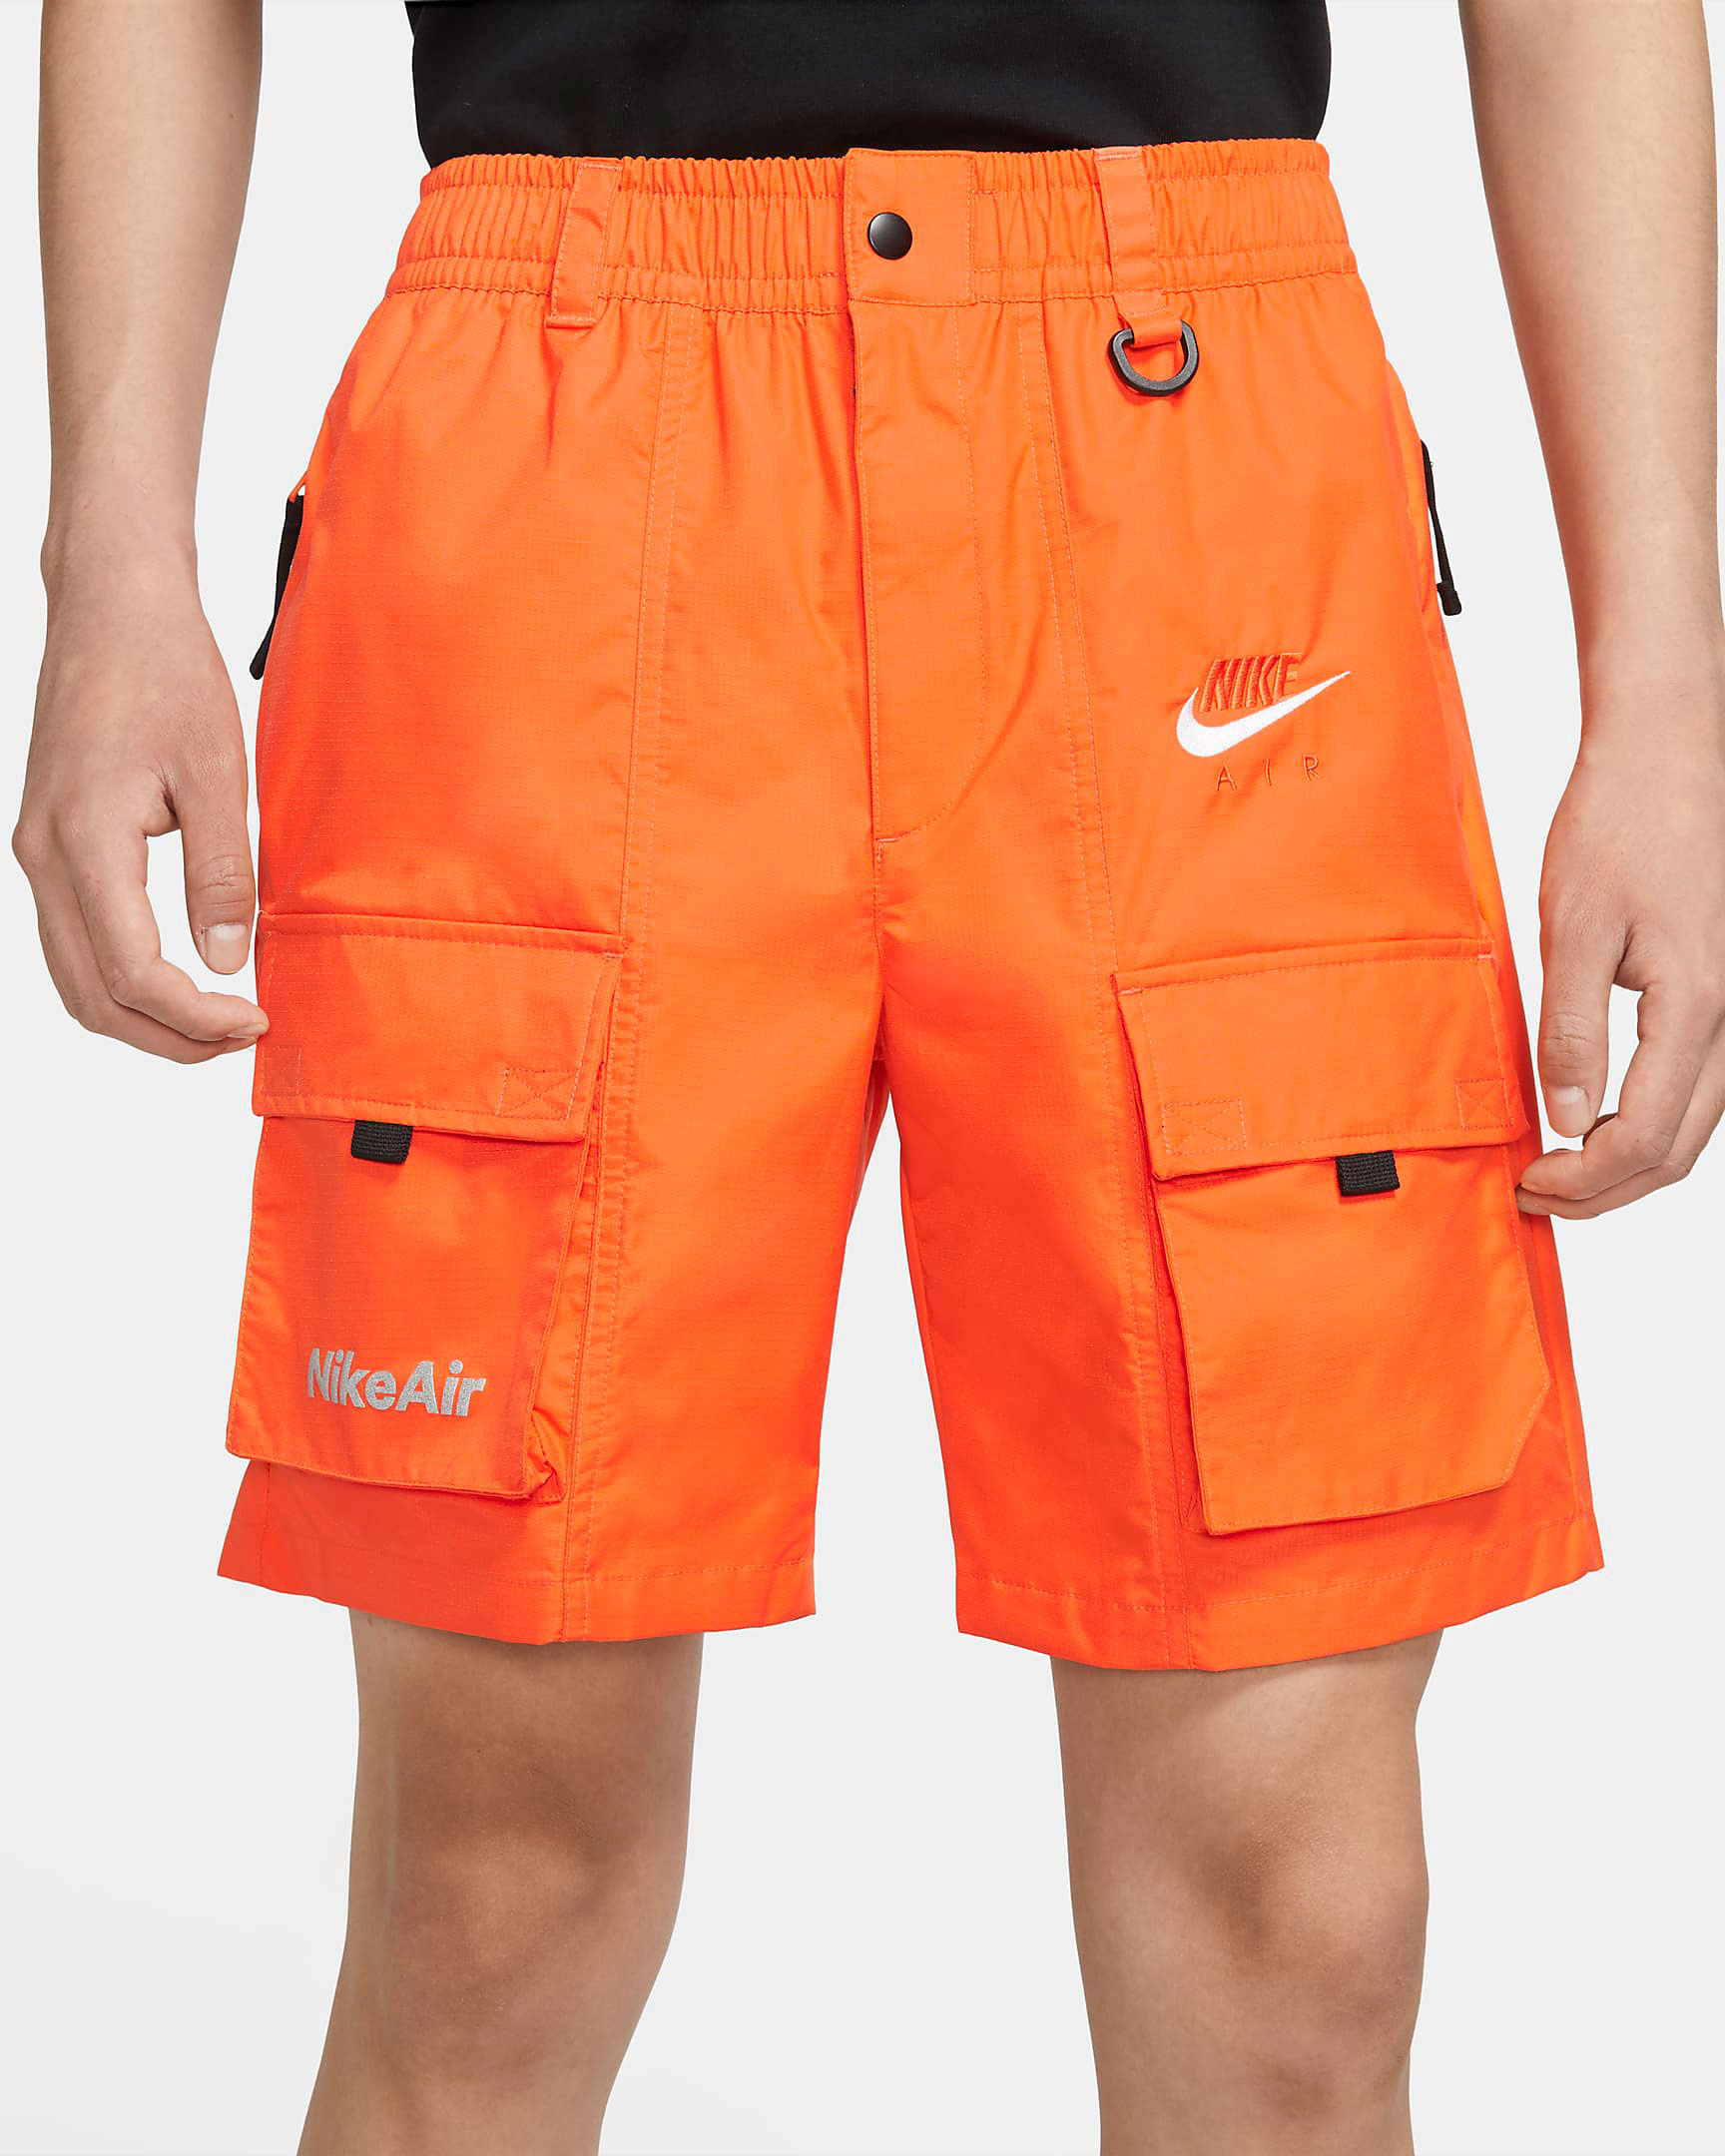 nike-air-shorts-orange